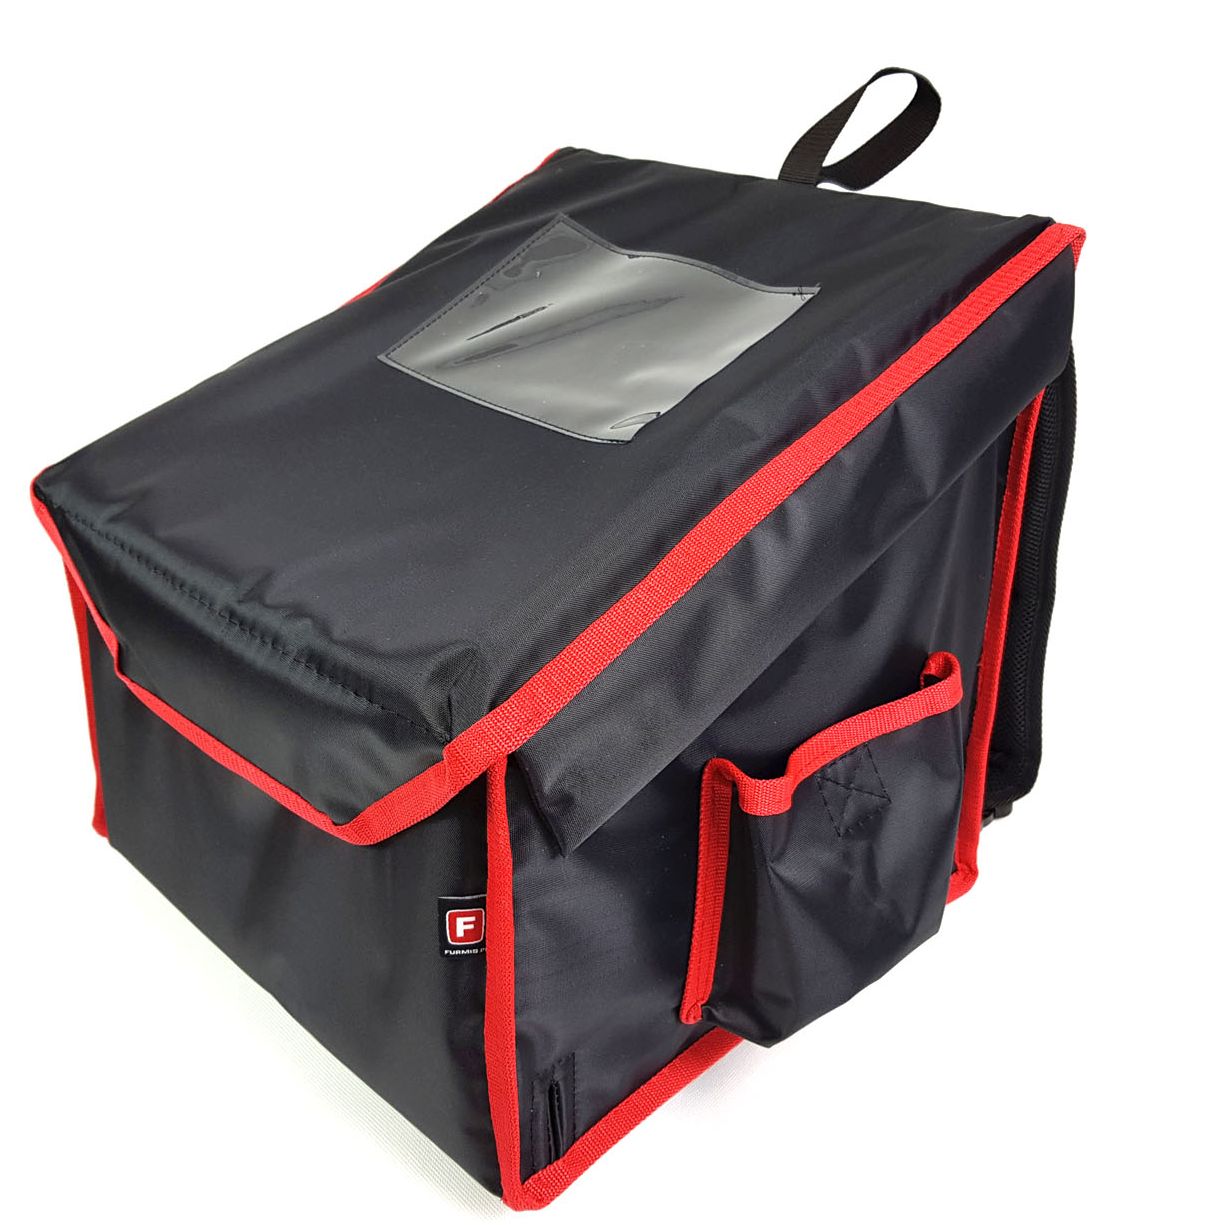 Plecaki - FURMIS - Pizza, torby i opakowania, urządzenia gastronomiczne ...